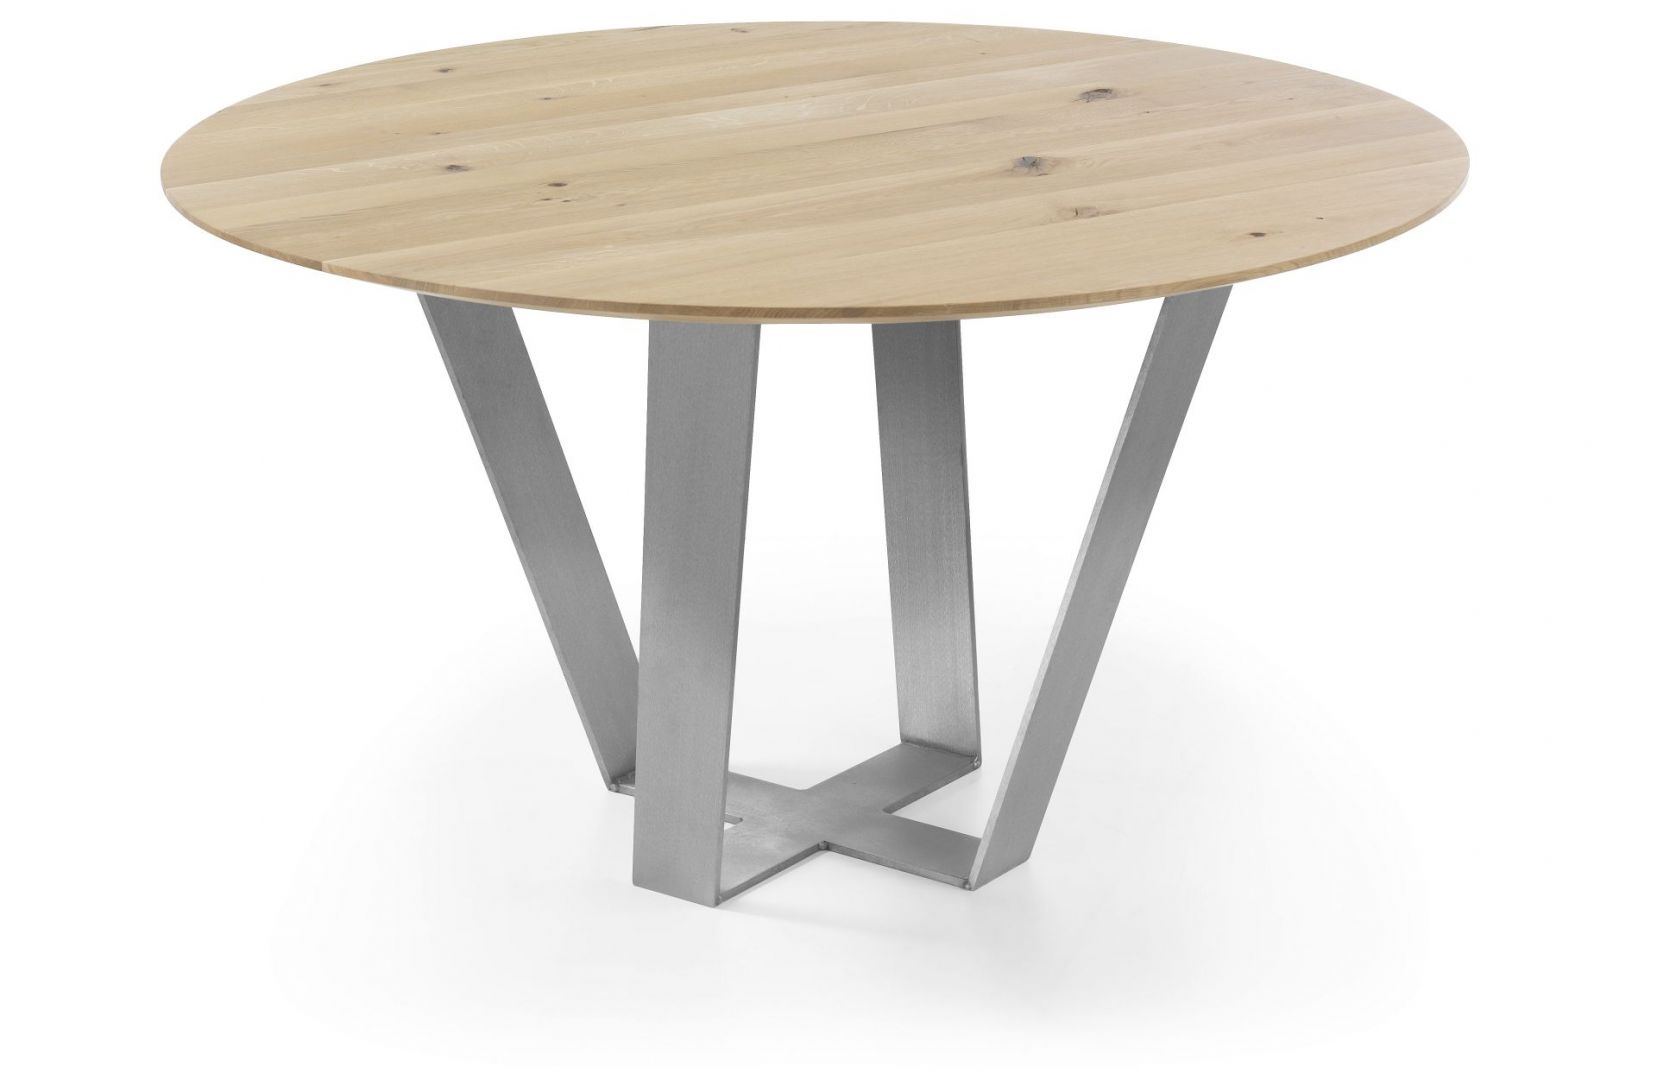 Okrągły stół Sonoro, wykonany z drzewa dębowego, o delikatnym ubarwieniu. Nogi będące podstawą stołu, wykonane są z efektownego matowego metalu. Fot. Congrazio